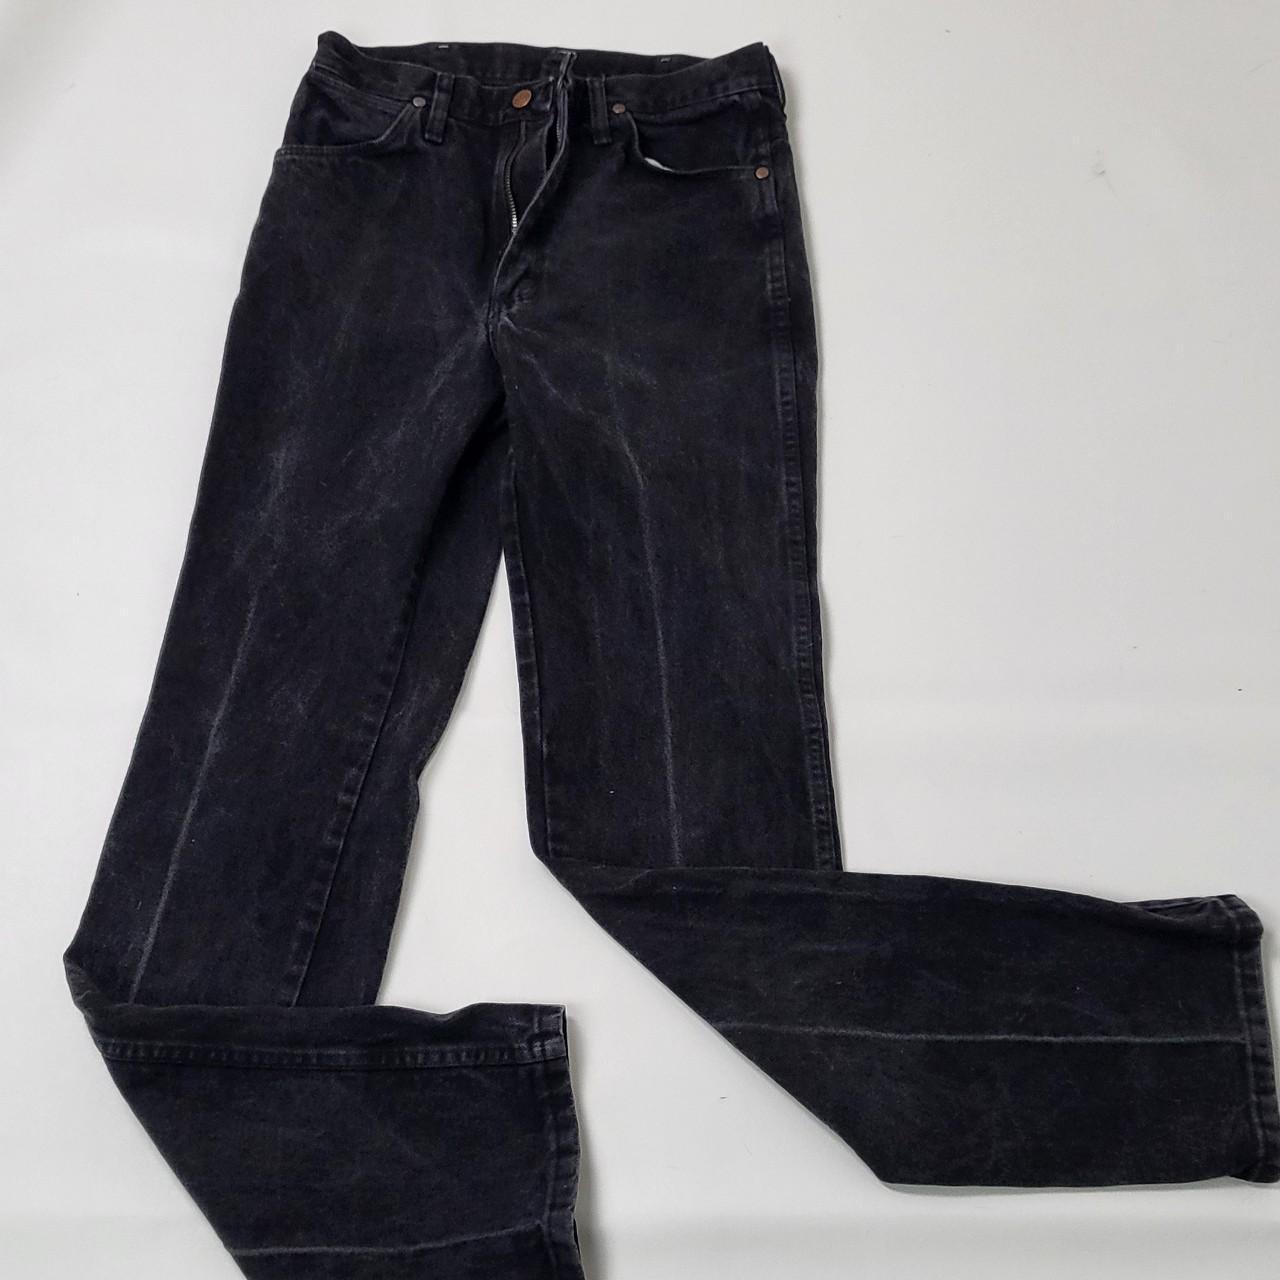 Vintage wrangler high waisted dark wash jeans size... - Depop